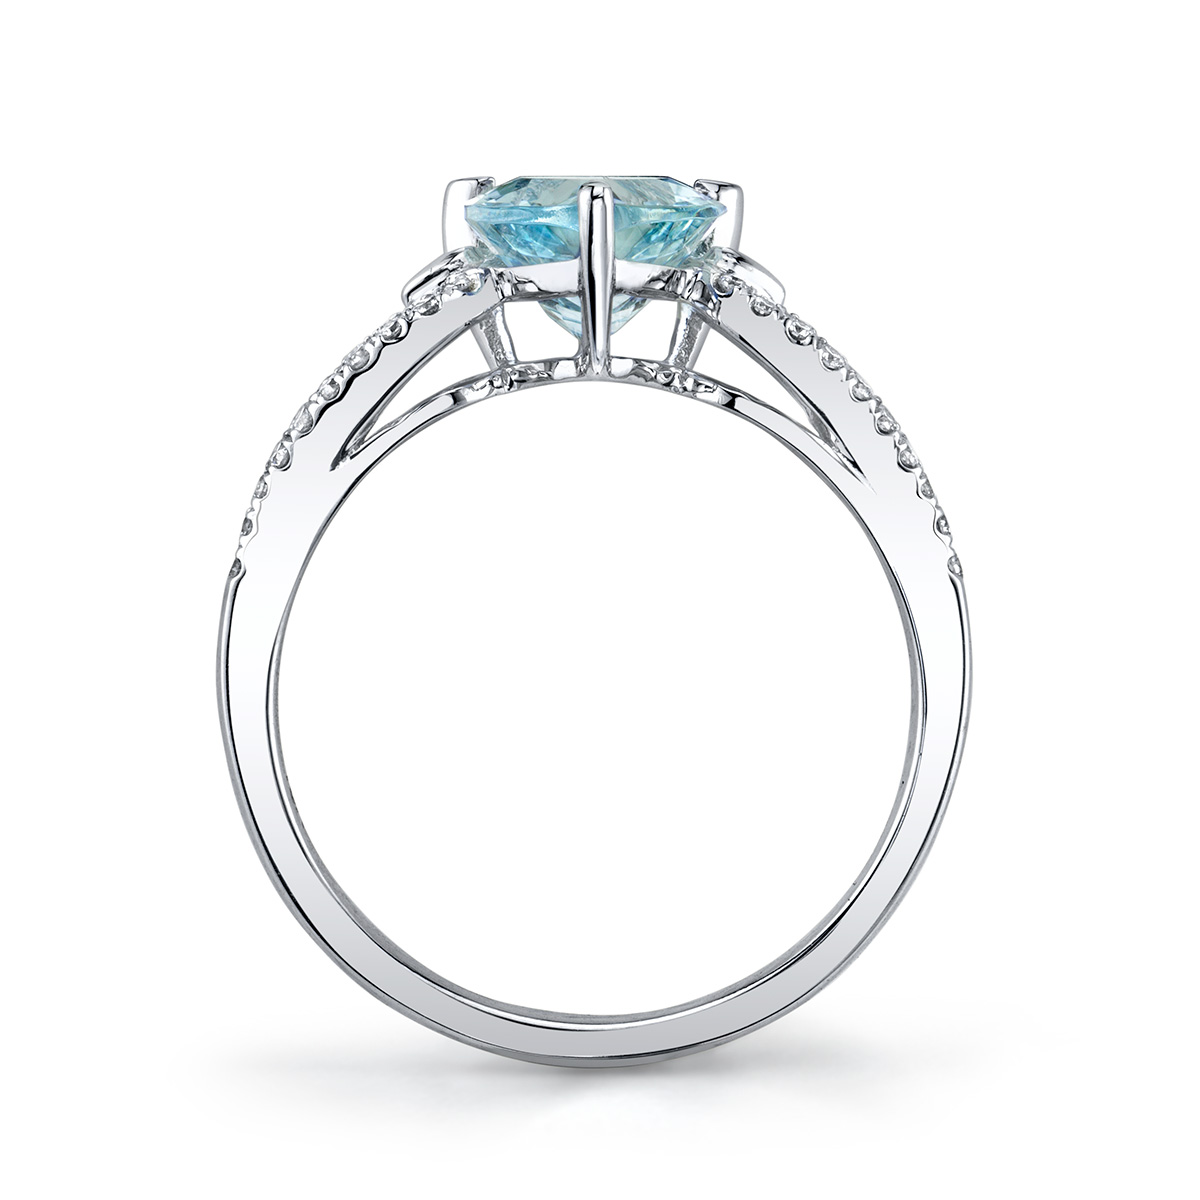 Designer diamond and aquamarine ring by Parade Design.